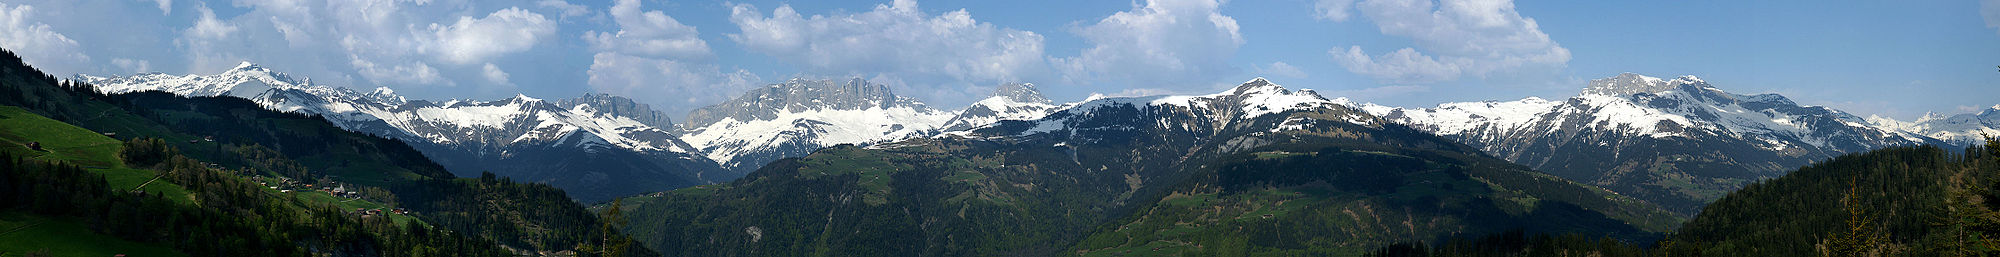 Blick von der Alpstrasse "Furna - Alp Lerch" zur Bergkette des Rätikon. Aufnahmestandort unweit des Ronentobels